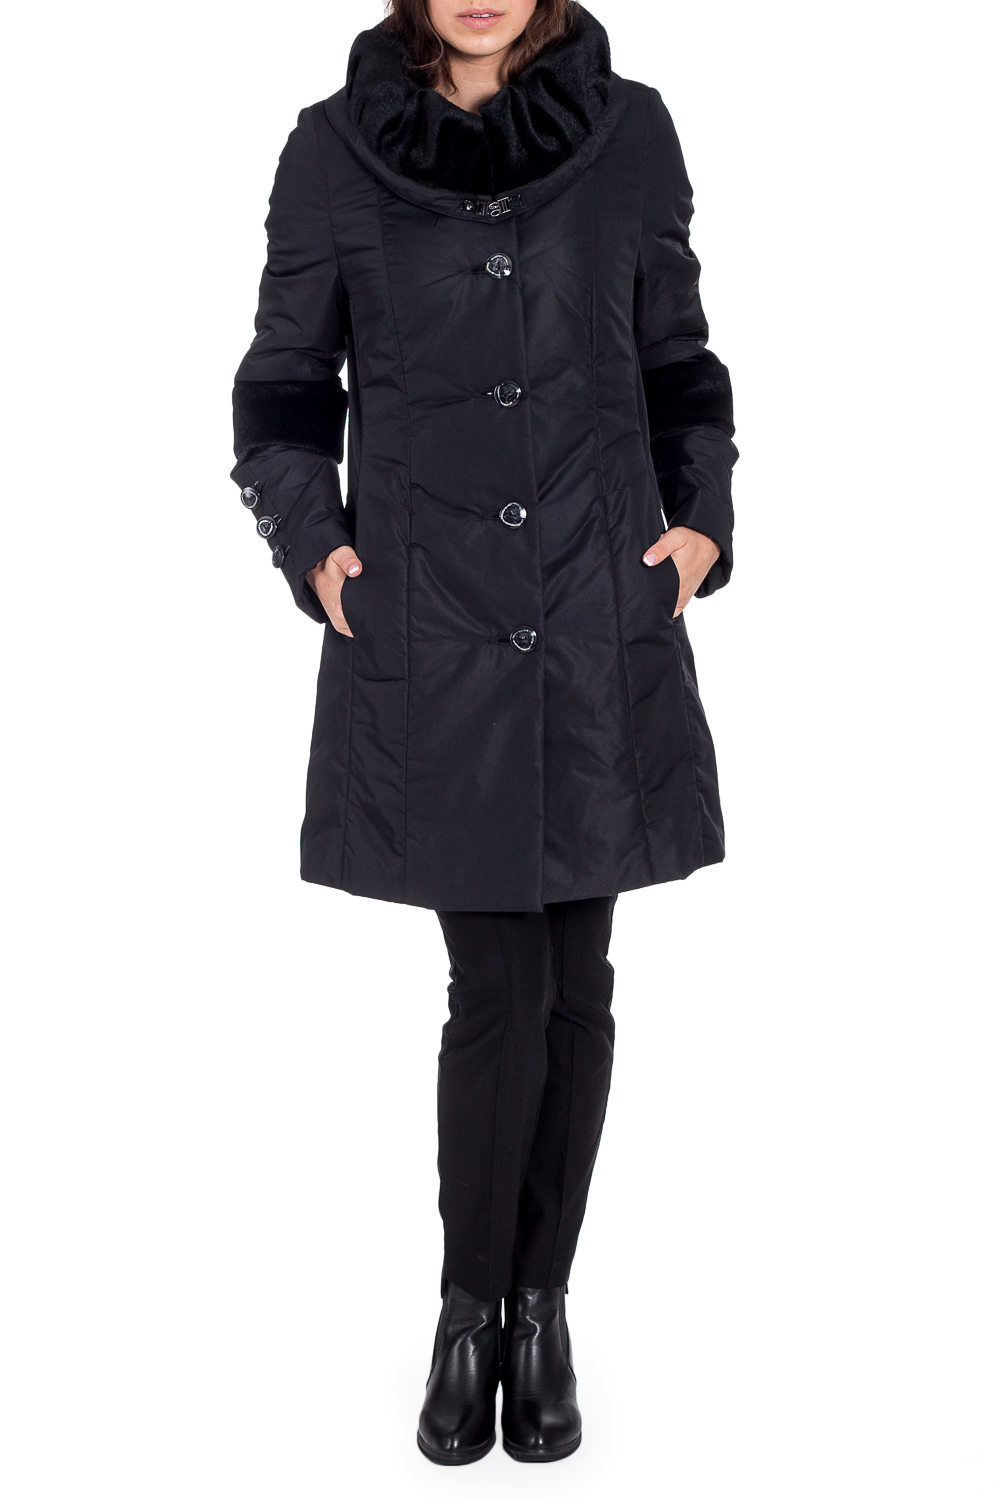 ПальтоКуртки<br>Красивое зимнее пальто с отделкой из меха. Модель на подкладе, выполнена из плотной болоньи. Отличный выбор для повседневного гардероба. Ростовка изделия 170 см.  В изделии использованы цвета: черный  Рост девушки-фотомодели 170 см  Темперетурный режим до -15 градусов.<br><br>Воротник: Фантазийный<br>Застежка: С пуговицами<br>По длине: Средней длины<br>По материалу: Тканевые<br>По рисунку: Однотонные<br>По силуэту: Полуприталенные<br>По стилю: Повседневный стиль<br>По элементам: С декором,С карманами<br>Рукав: Длинный рукав<br>По сезону: Зима<br>Размер : 46<br>Материал: Болонья<br>Количество в наличии: 1